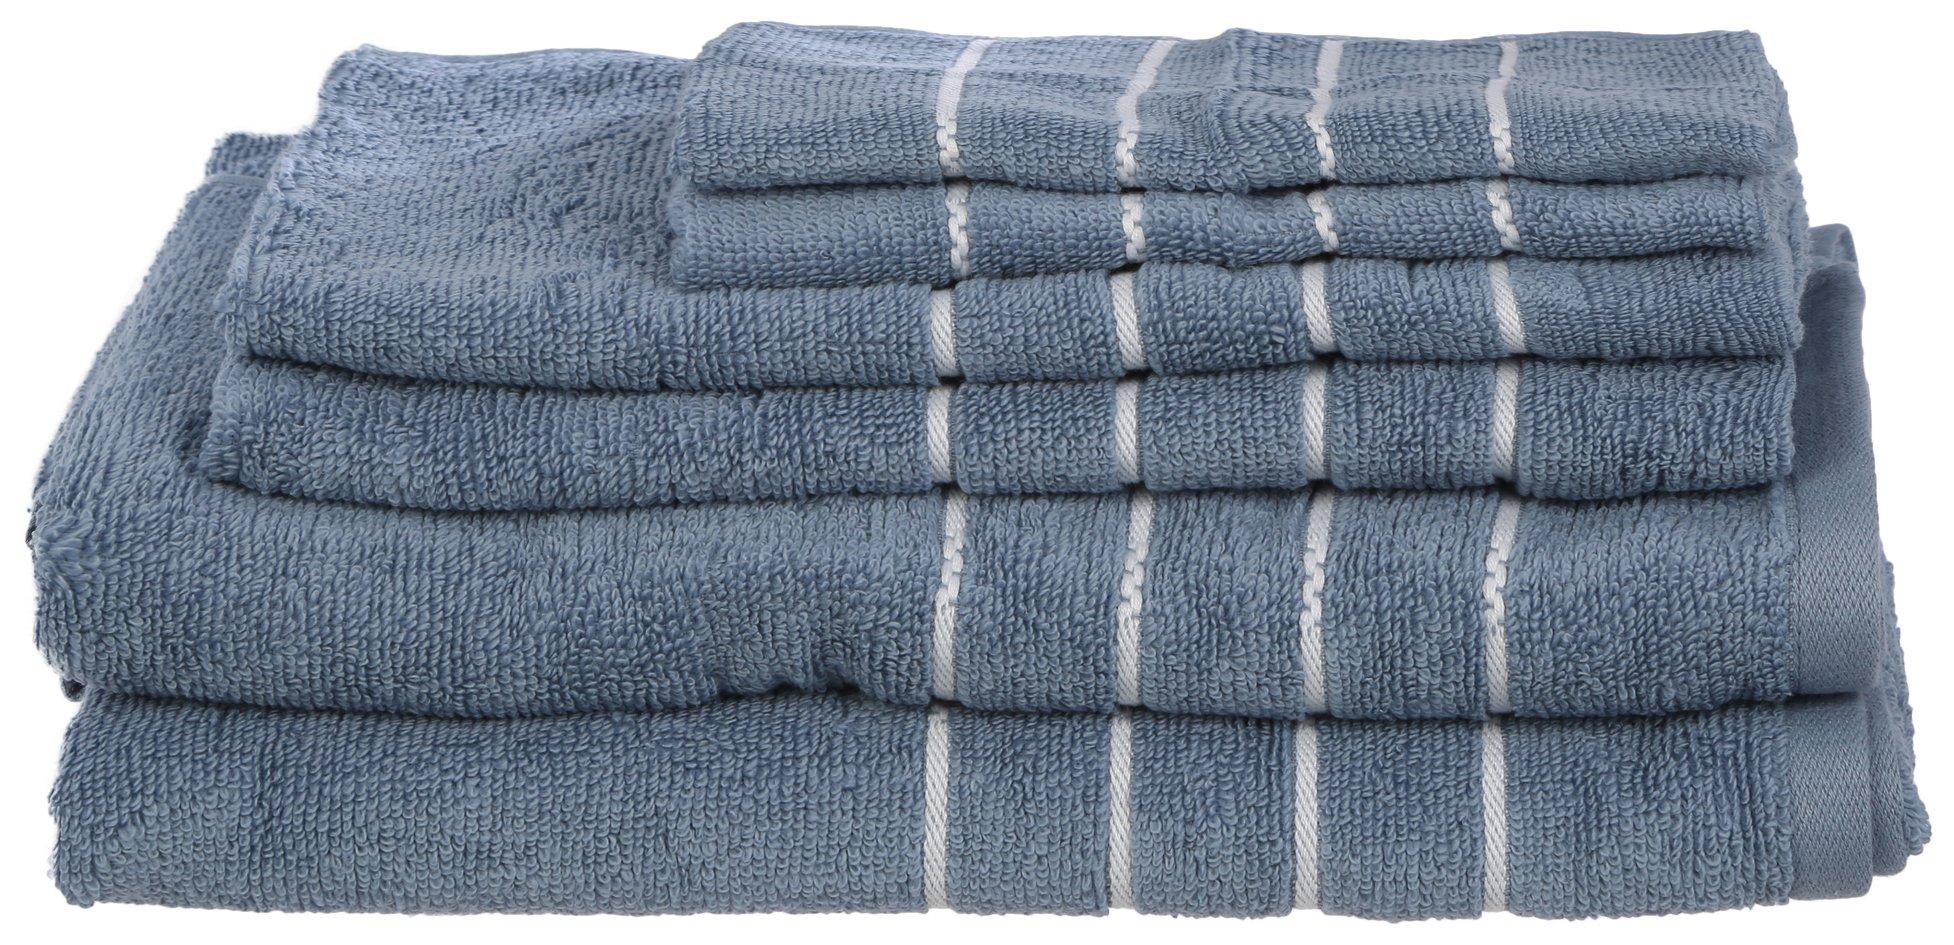 6 Pc Deacon Towel Set